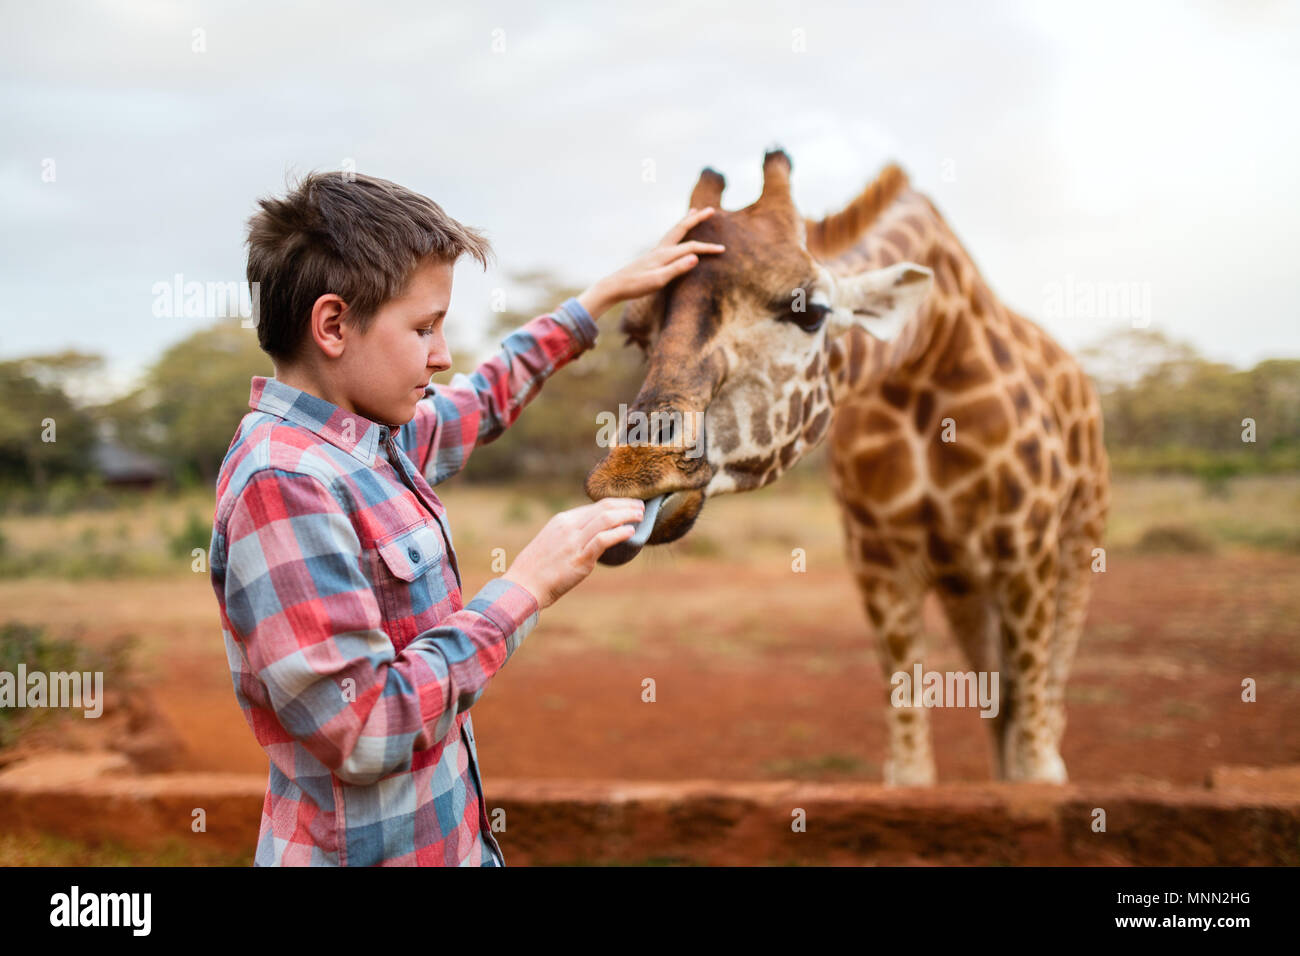 Giovane ragazzo adolescente alimentando le giraffe in Africa Foto Stock